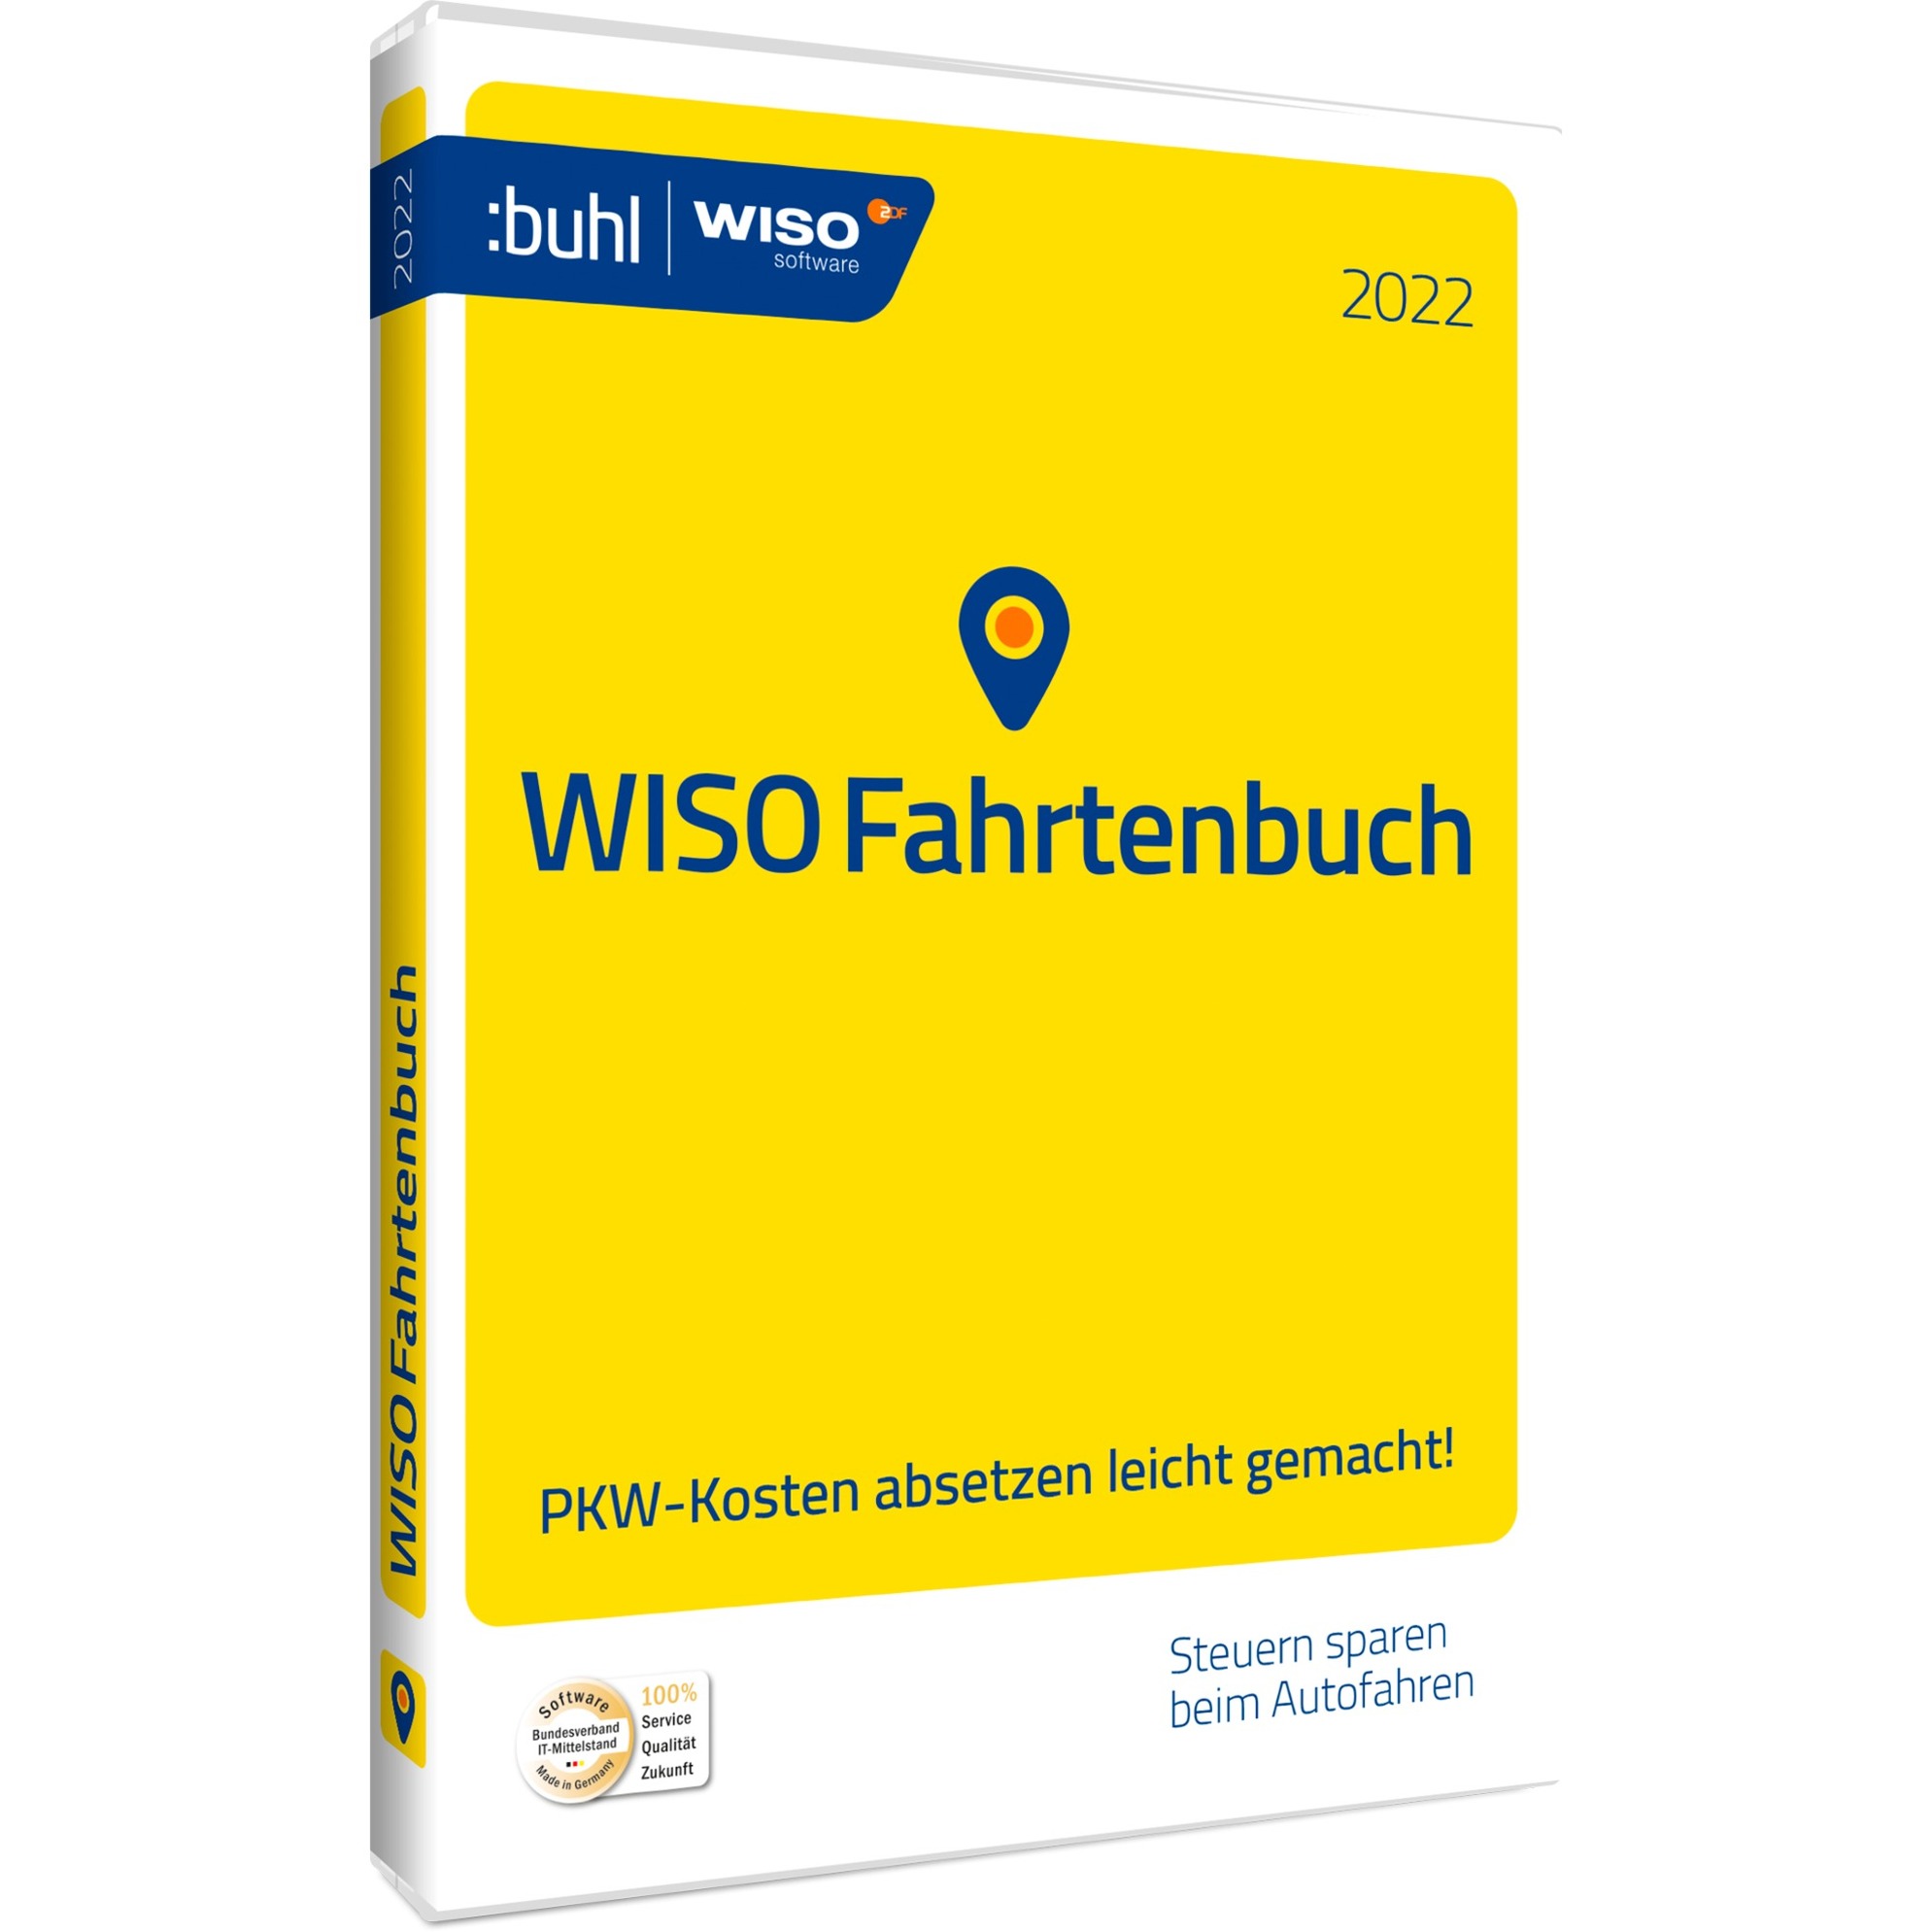 Image of Alternate - WISO Fahrtenbuch 2022, Finanz-Software online einkaufen bei Alternate